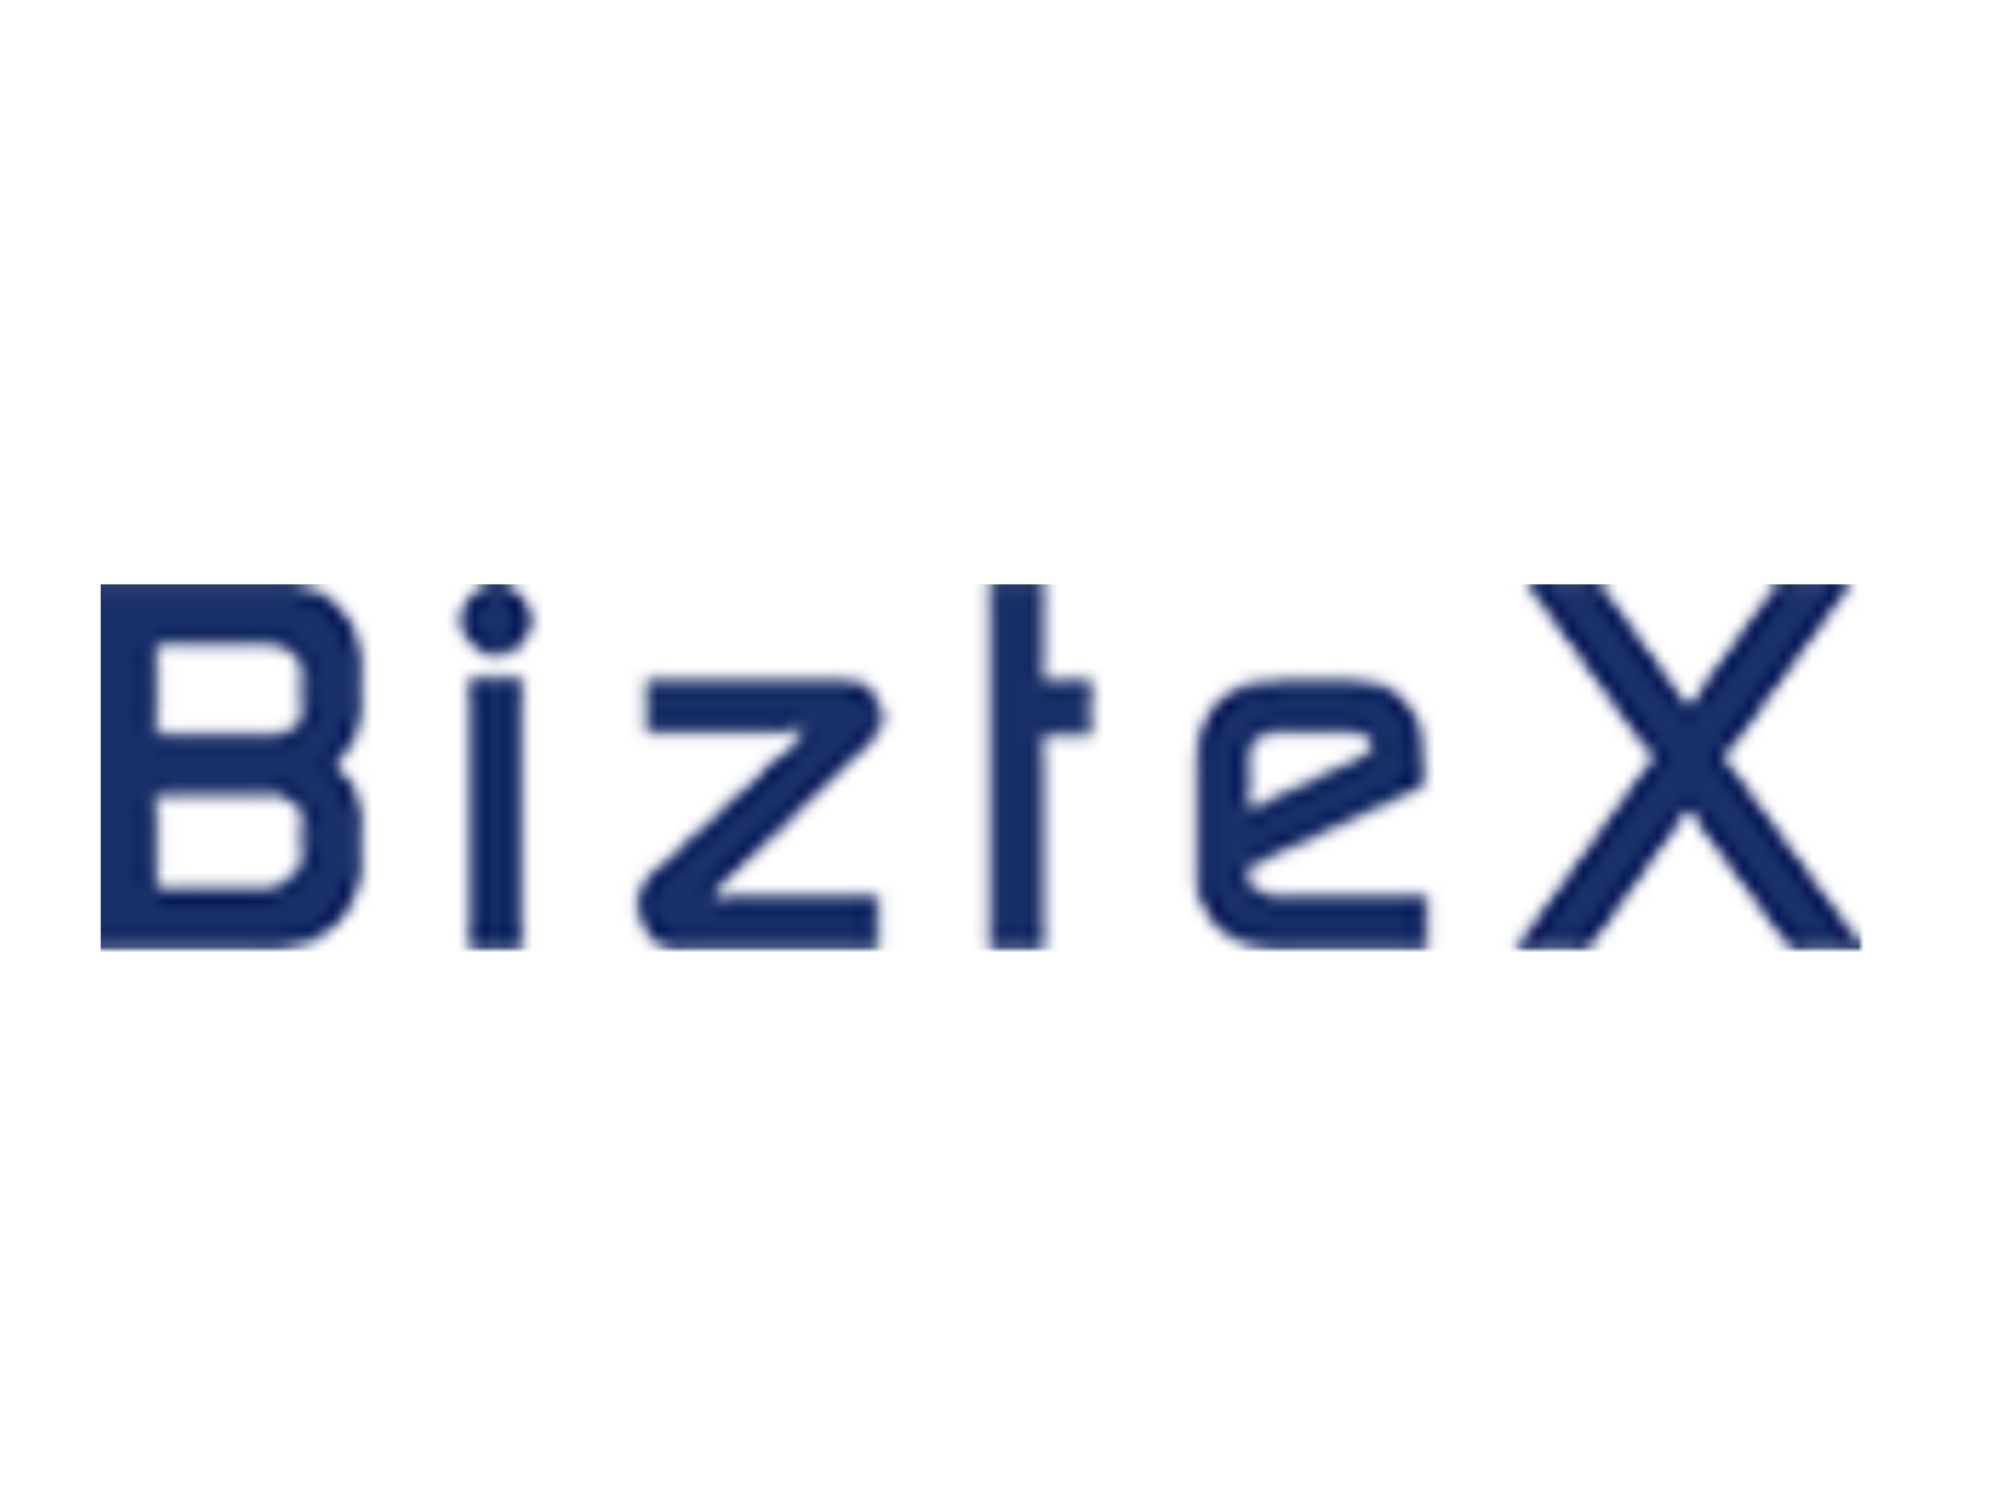 BizteX株式会社_logo